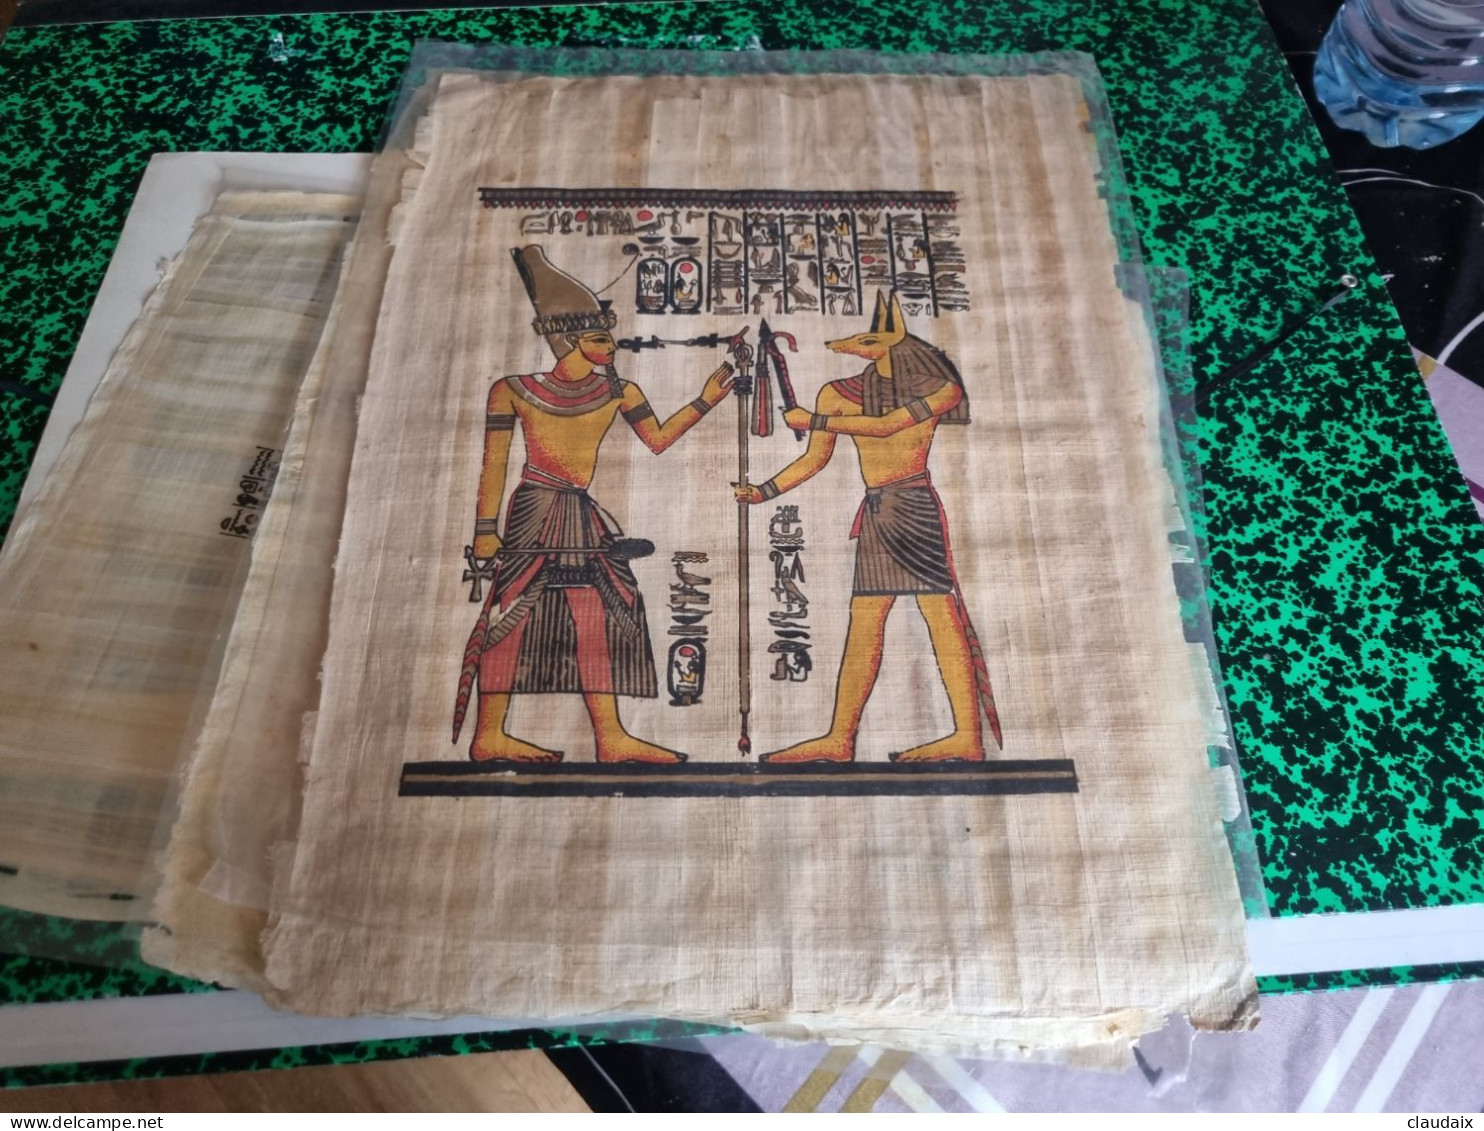 Vends papyrus sur Égypte